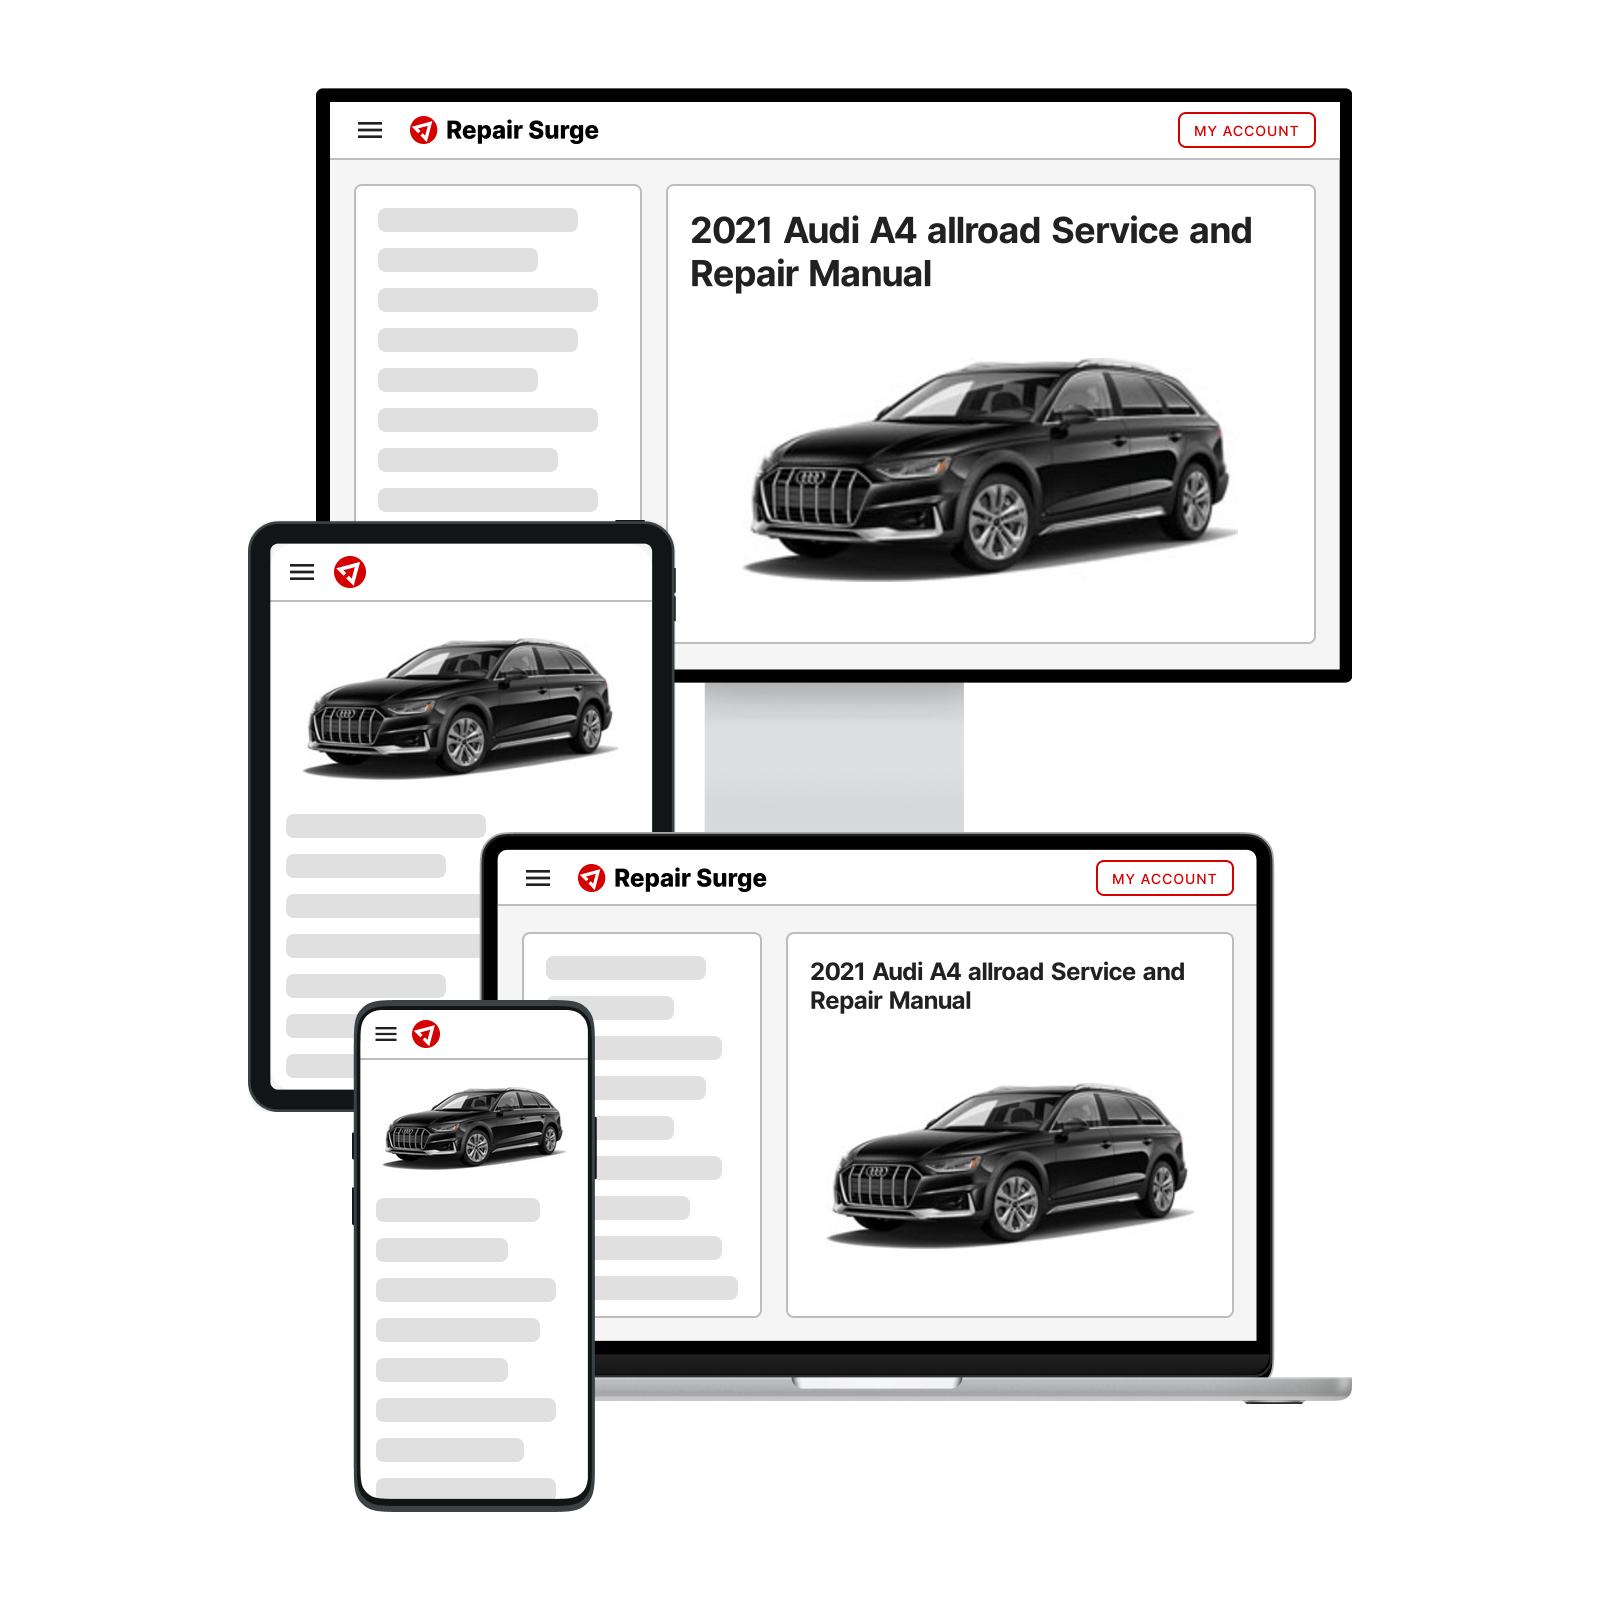 2021 Audi A4 allroad service and repair manual hero image